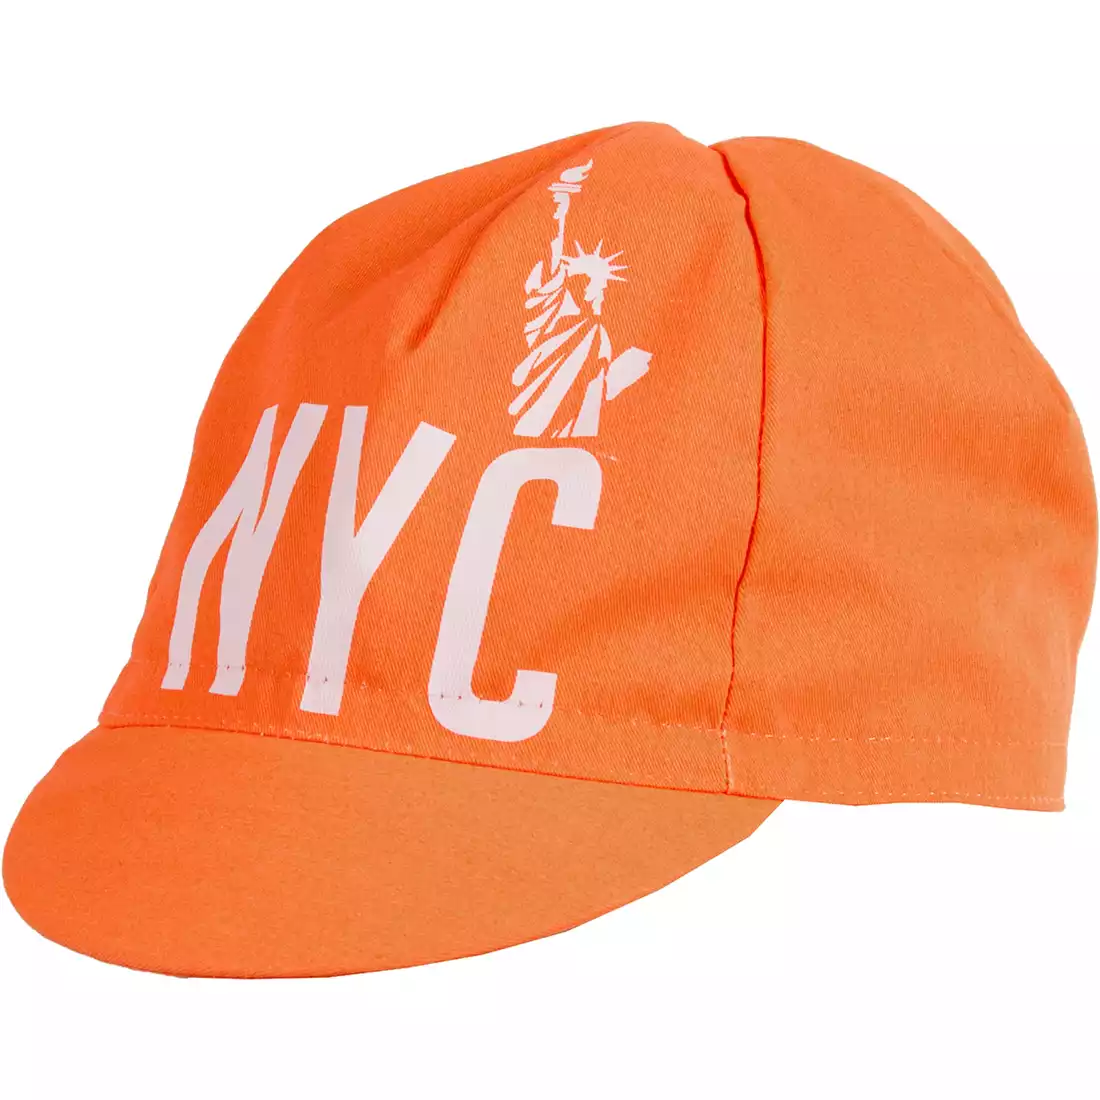 GIORDANA SS18 czapeczka kolarska - New York City Liberty - Orange GI-S3-COCA-NYCL-ORAN one size